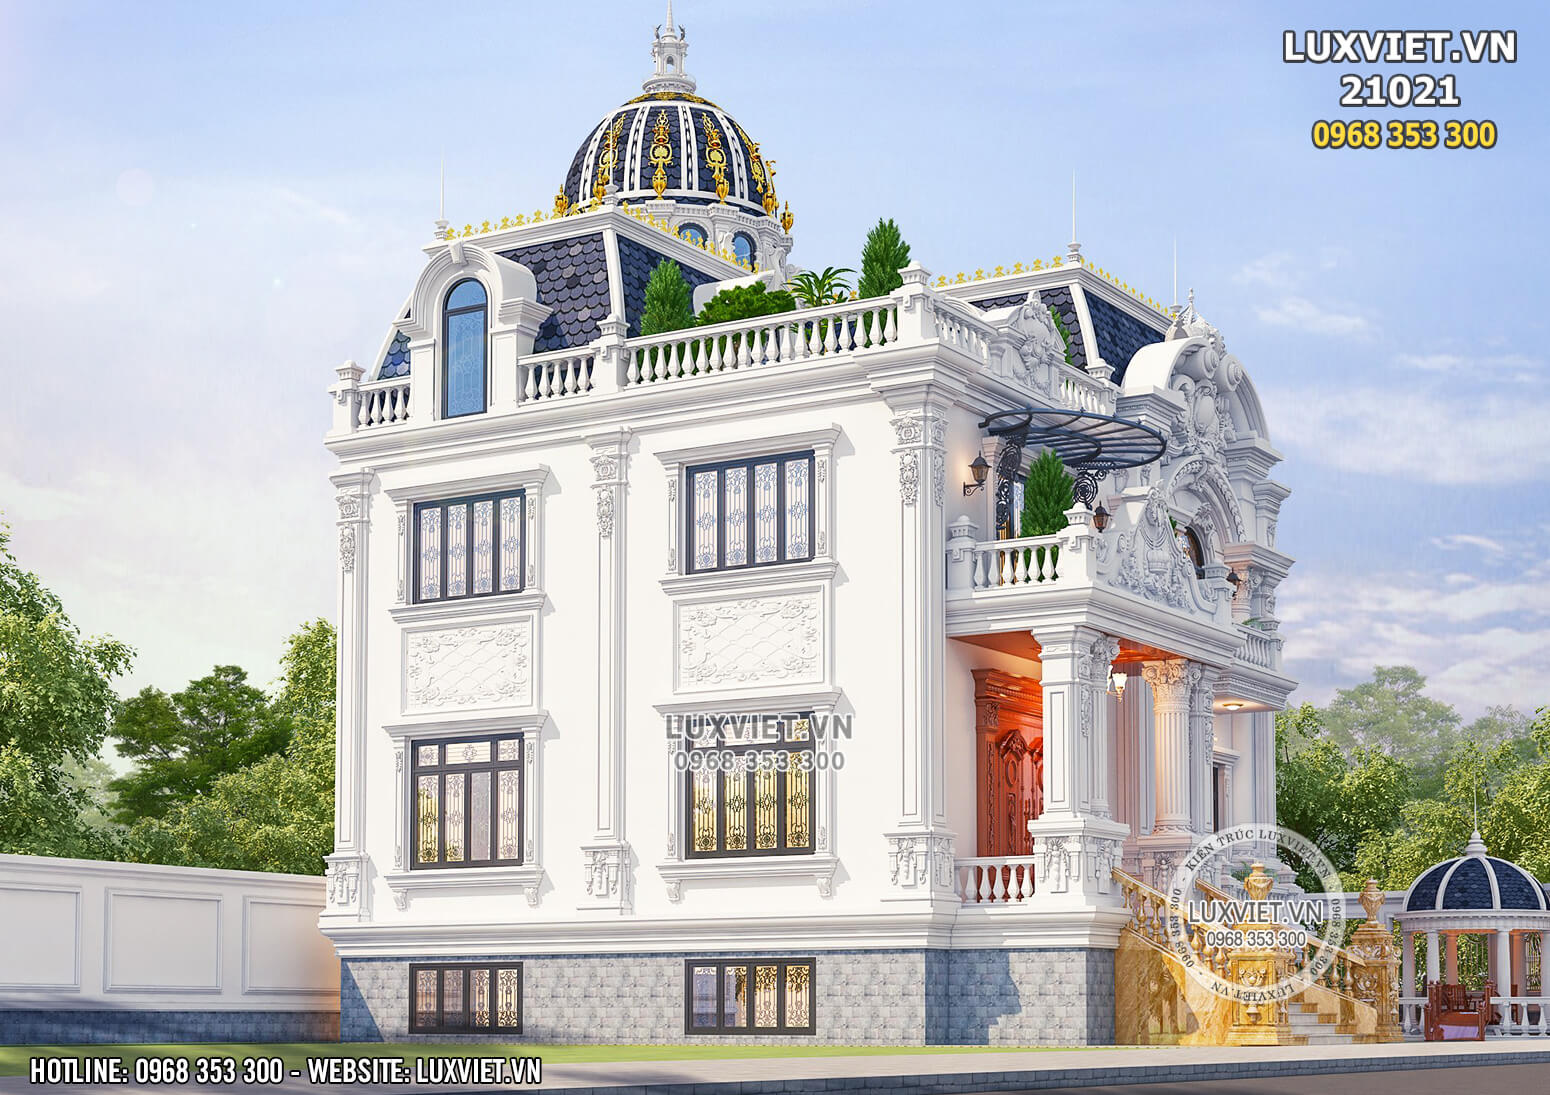 Thiết kế biệt thự lâu đài đẹp tại Vũng Tàu - LuxViet 21021